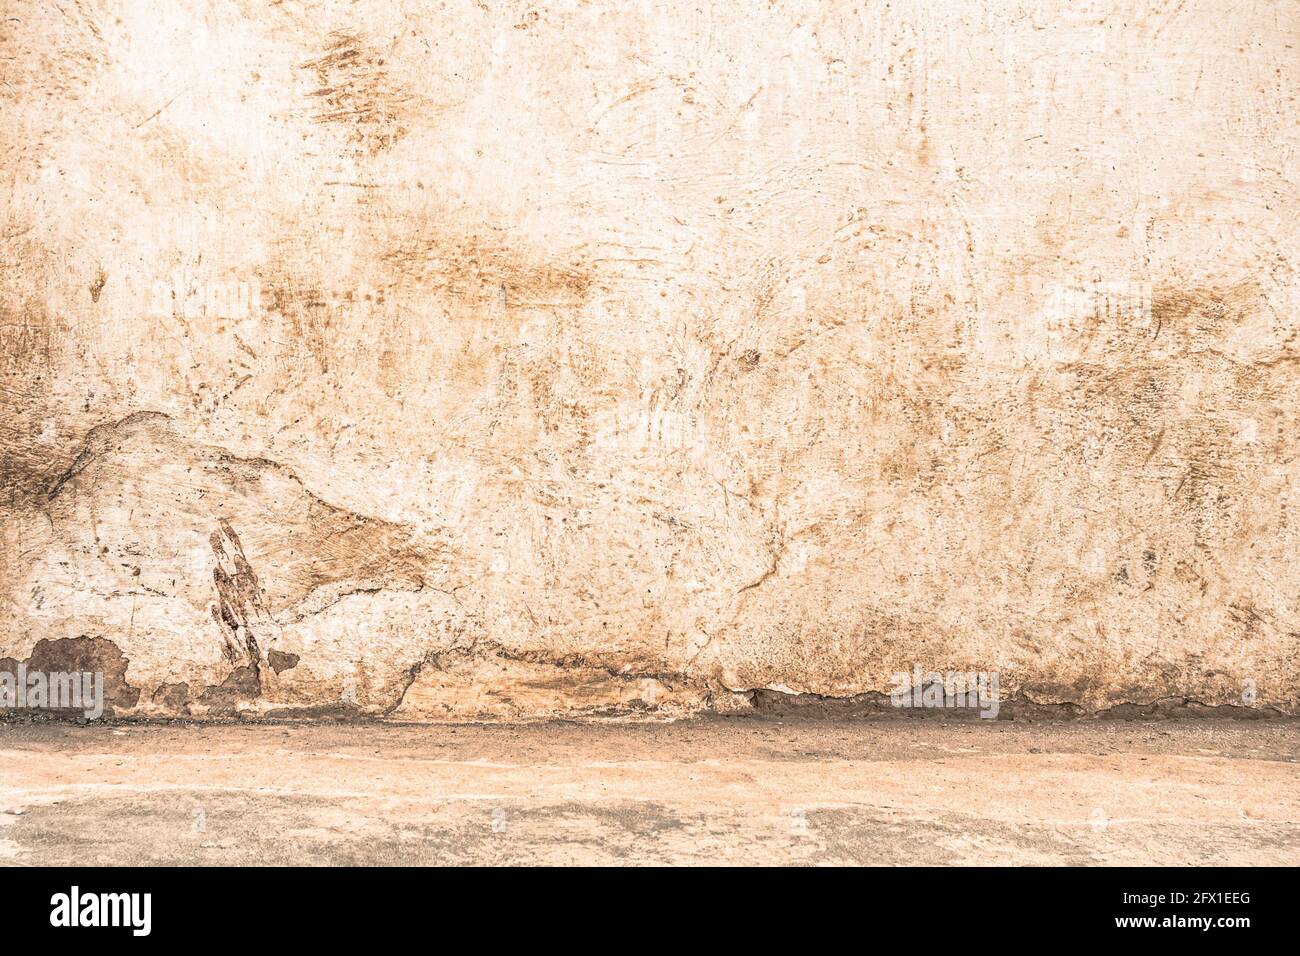 Parete vuota con bordo pavimento - scenografia di sfondo drammatica con Muro di pietra incrinato per la costruzione della prigione - filtro croccante a contrasto migliorato modifica Foto Stock